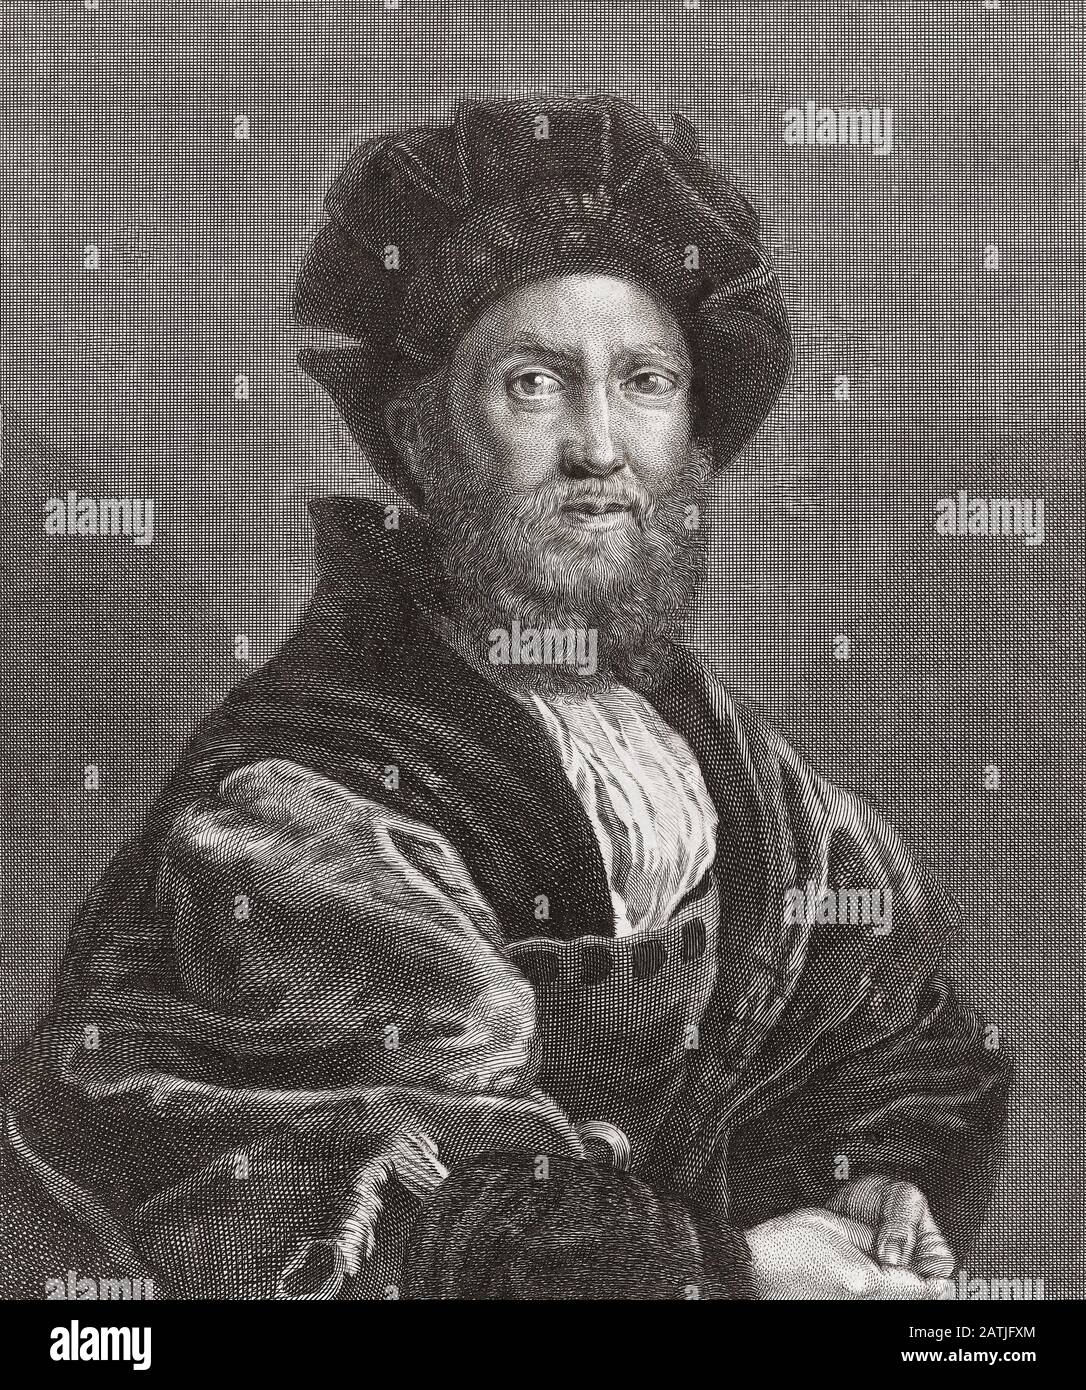 Baldassare Castiglione, 1478 - 1529. Anzahl der Casatico. Italienischer Höfling, Diplomat, Soldat und ein prominenter Renaissance-Autor. Stockfoto